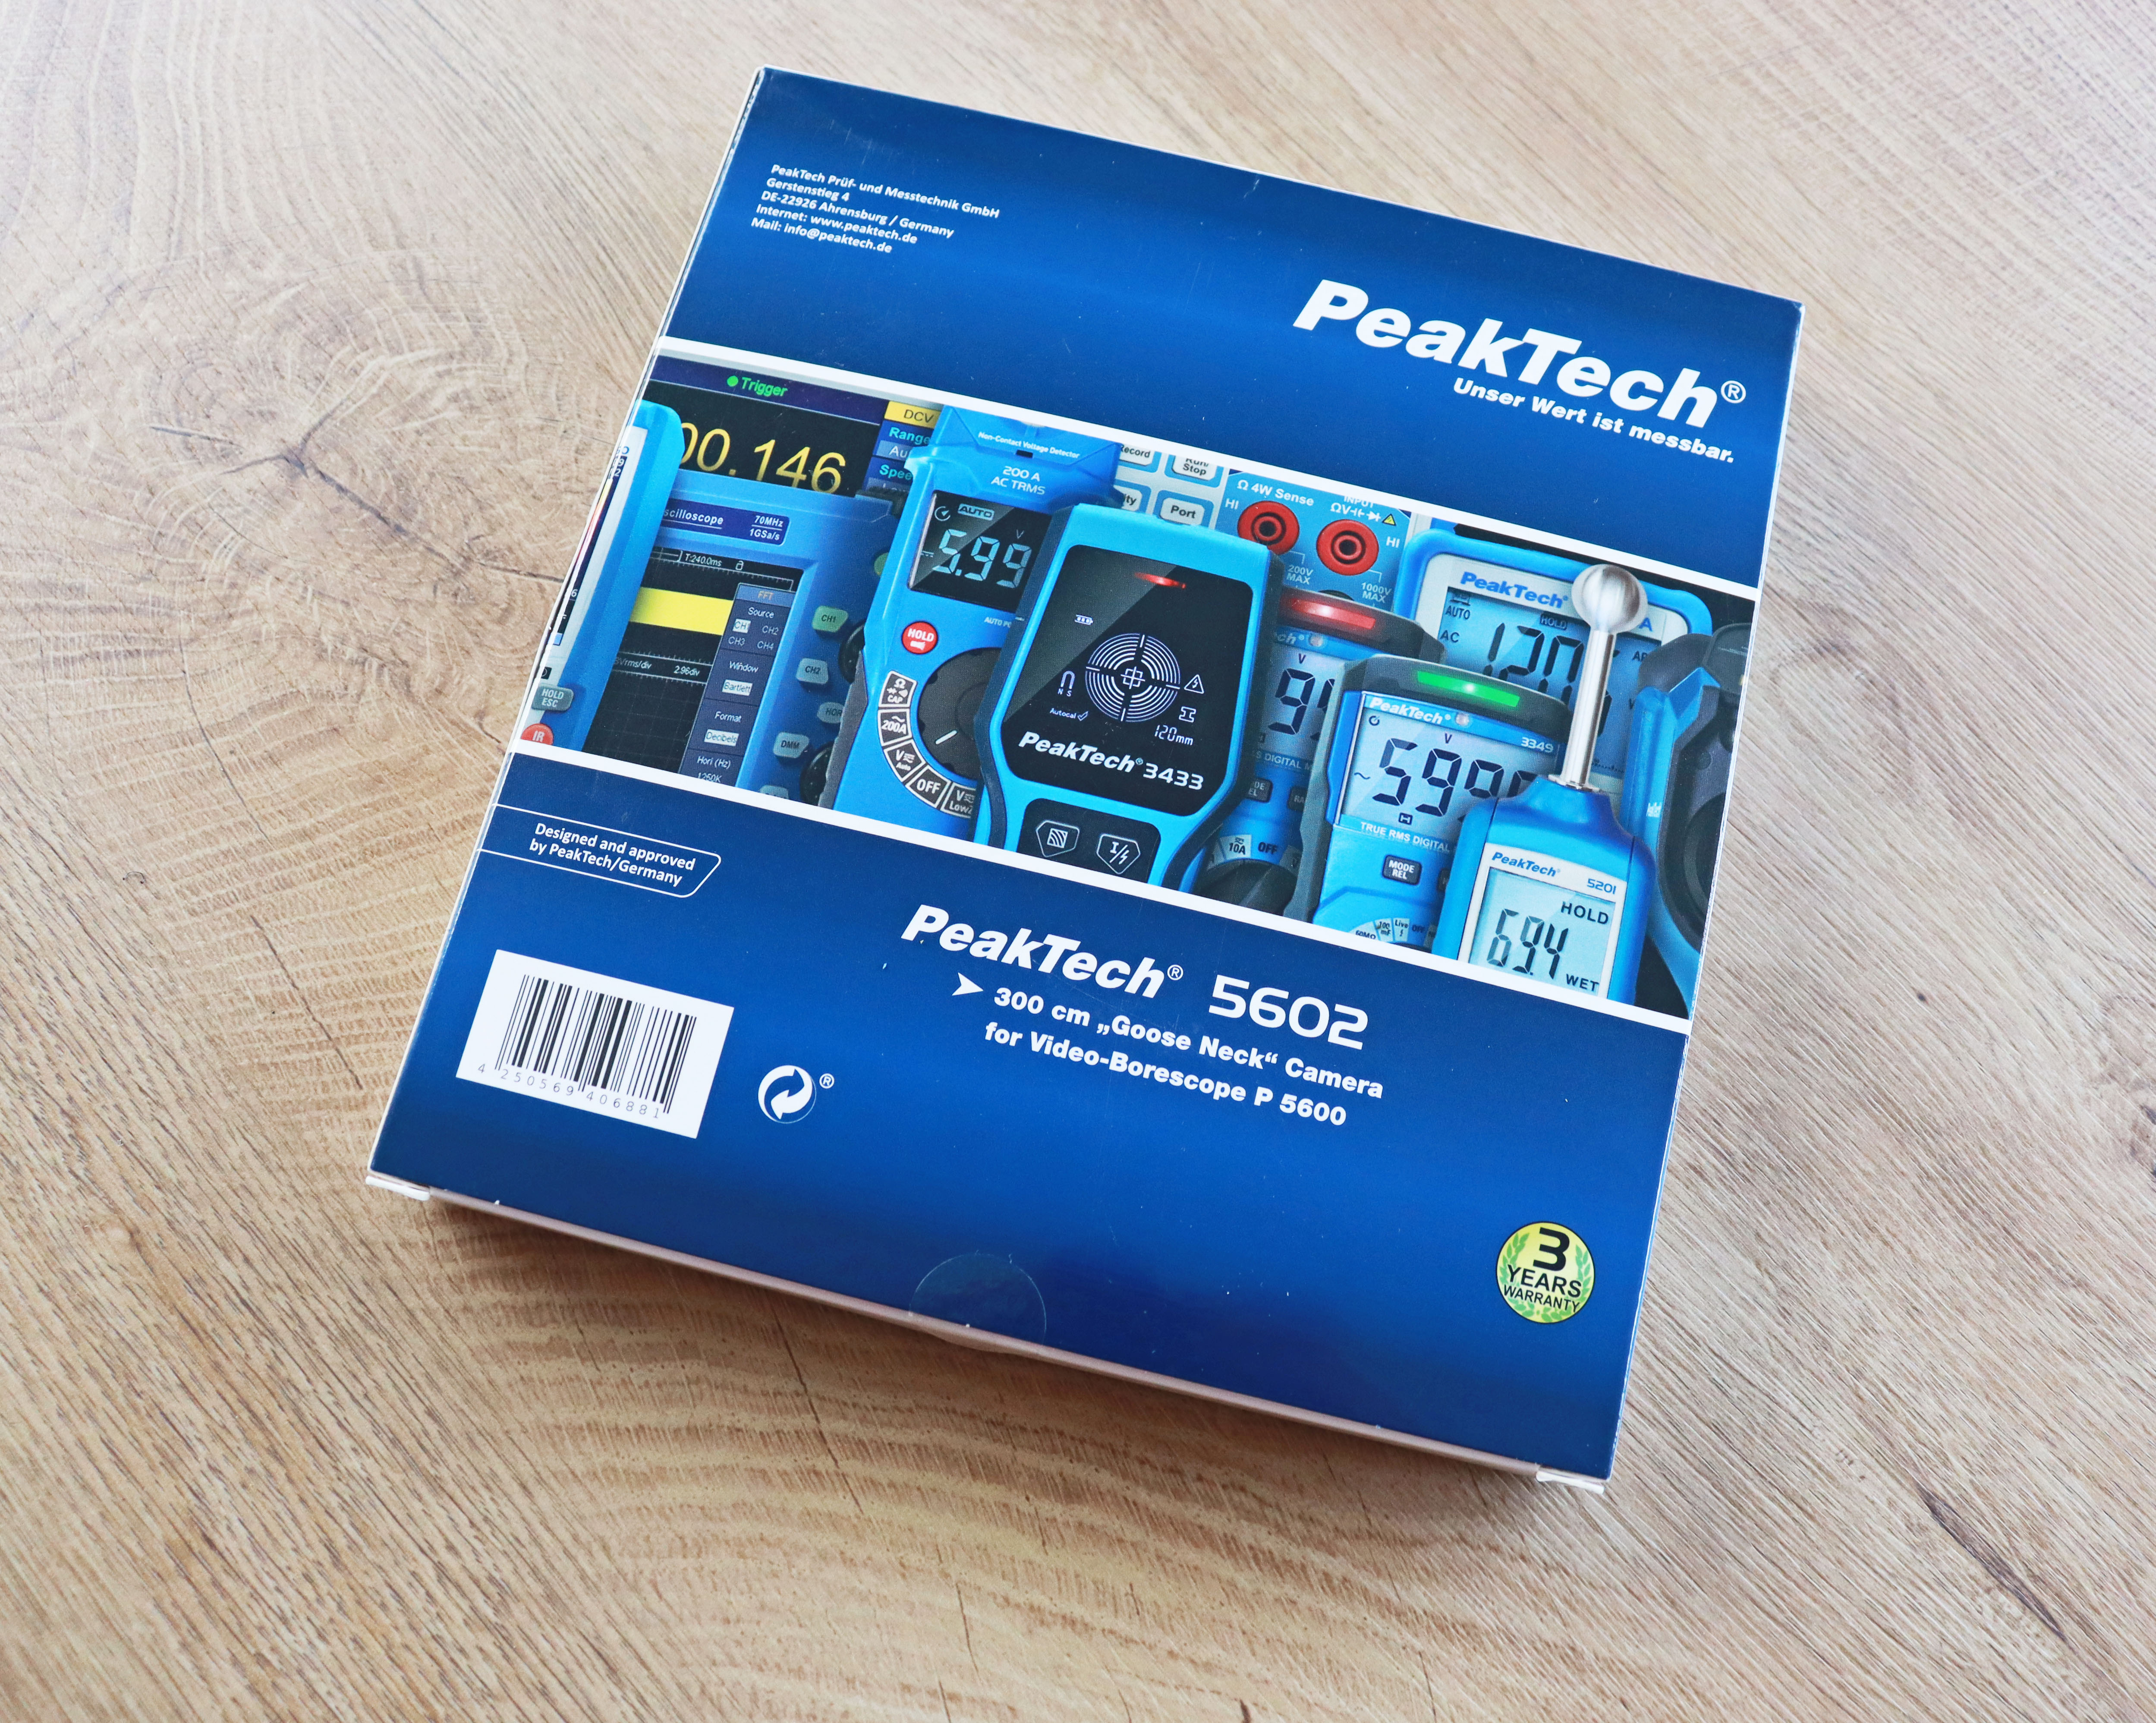 "PeakTech® P 5602" Telecamera aggiuntiva con collo d'oca da 3 metri per PeakTech 5600